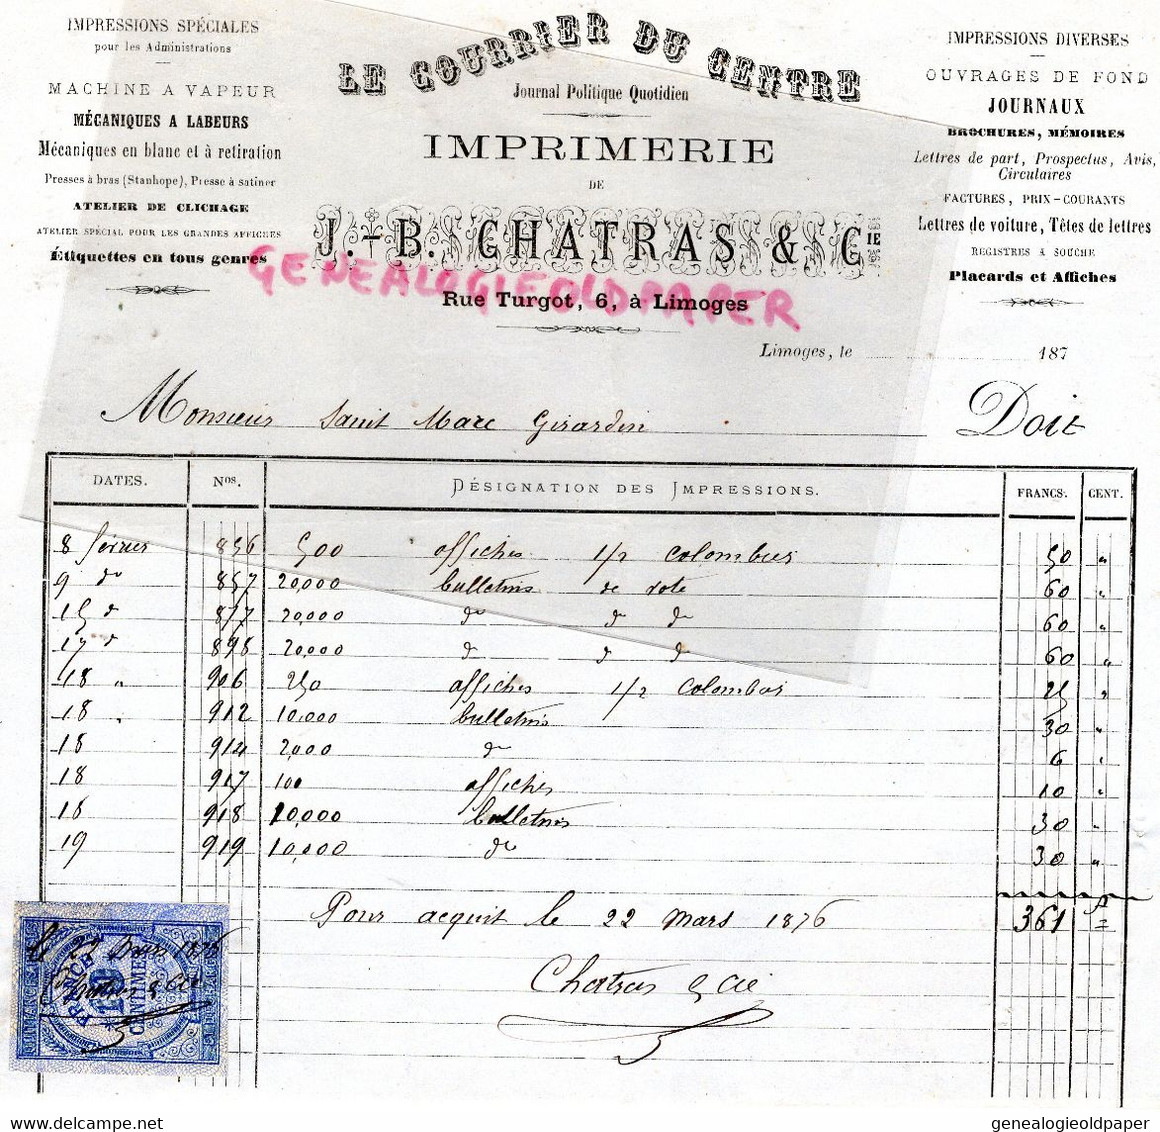 87 - LIMOGES- RARE FACTURE IMPRIMERIE  J.B. CHATRAS- 6 RUE TURGOT- COURRIER DU CENTRE- 1870- ST SAINT MARC GIRARDIN - Drukkerij & Papieren